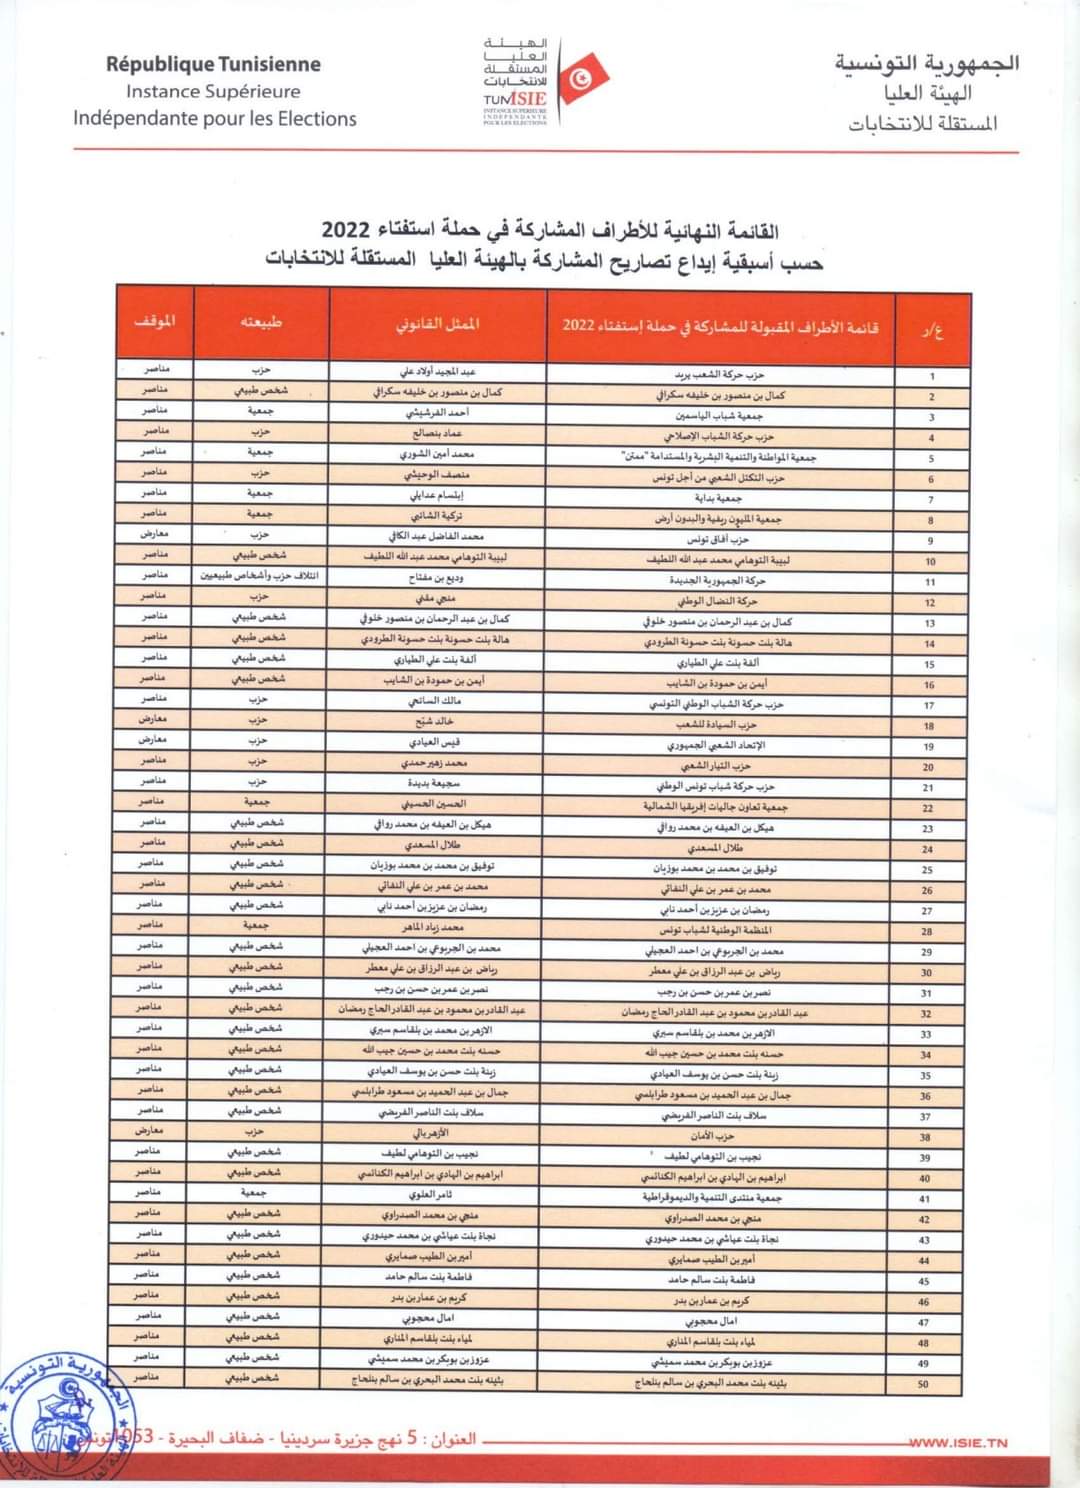 FB IMG 1657052773260 - هام: هيئة الانتخابات تنشر القائمة النهائية للأطراف المشاركة في حملة الاستفتاء